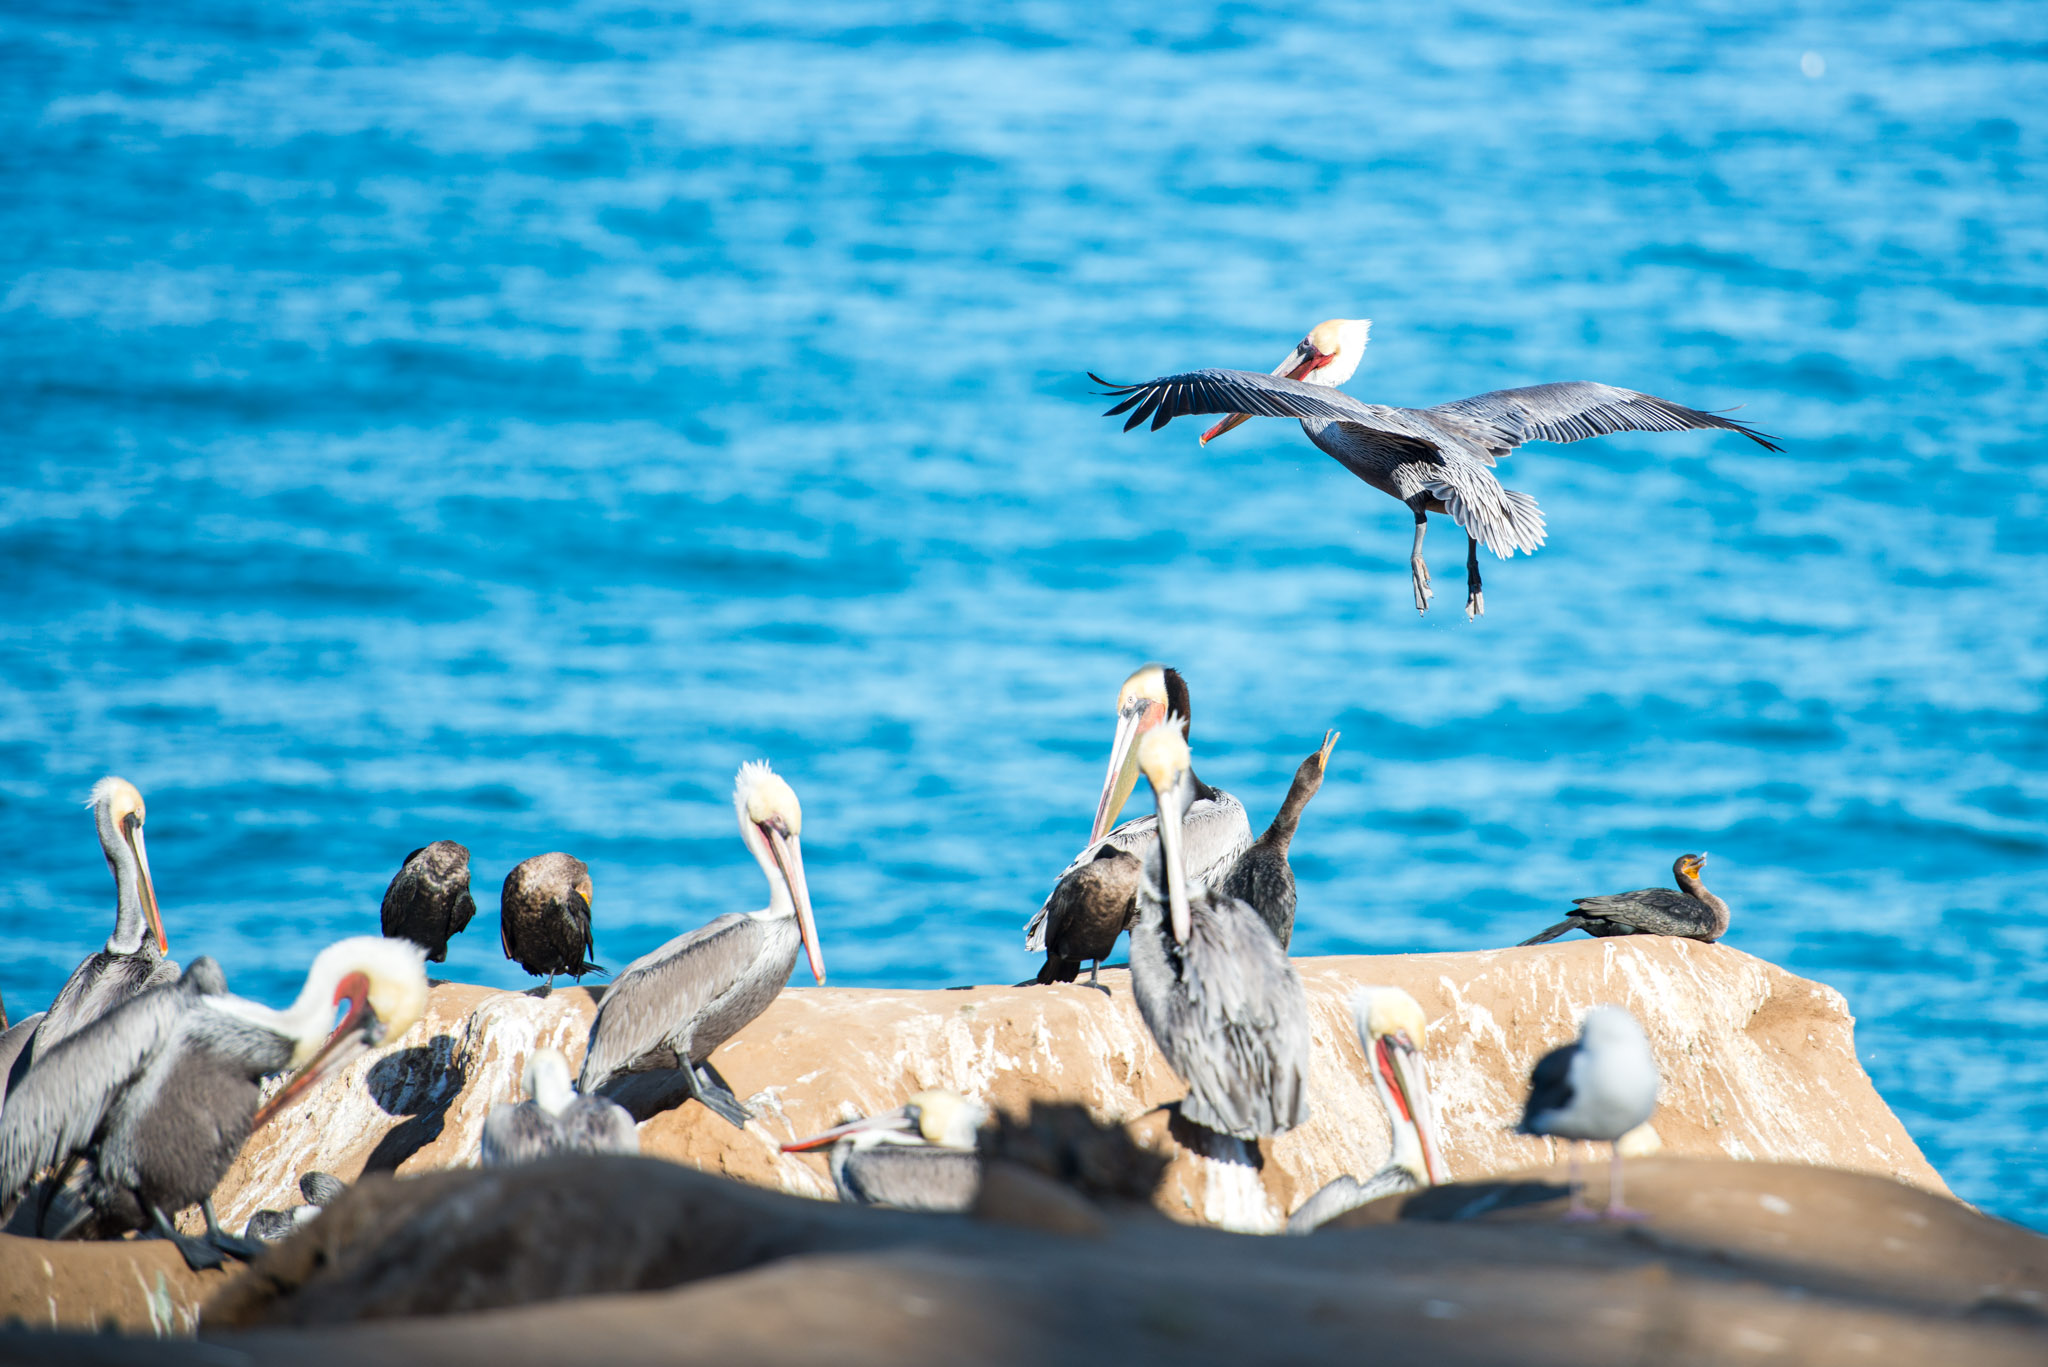 Some pelicans, chilling at La Jolla Cove